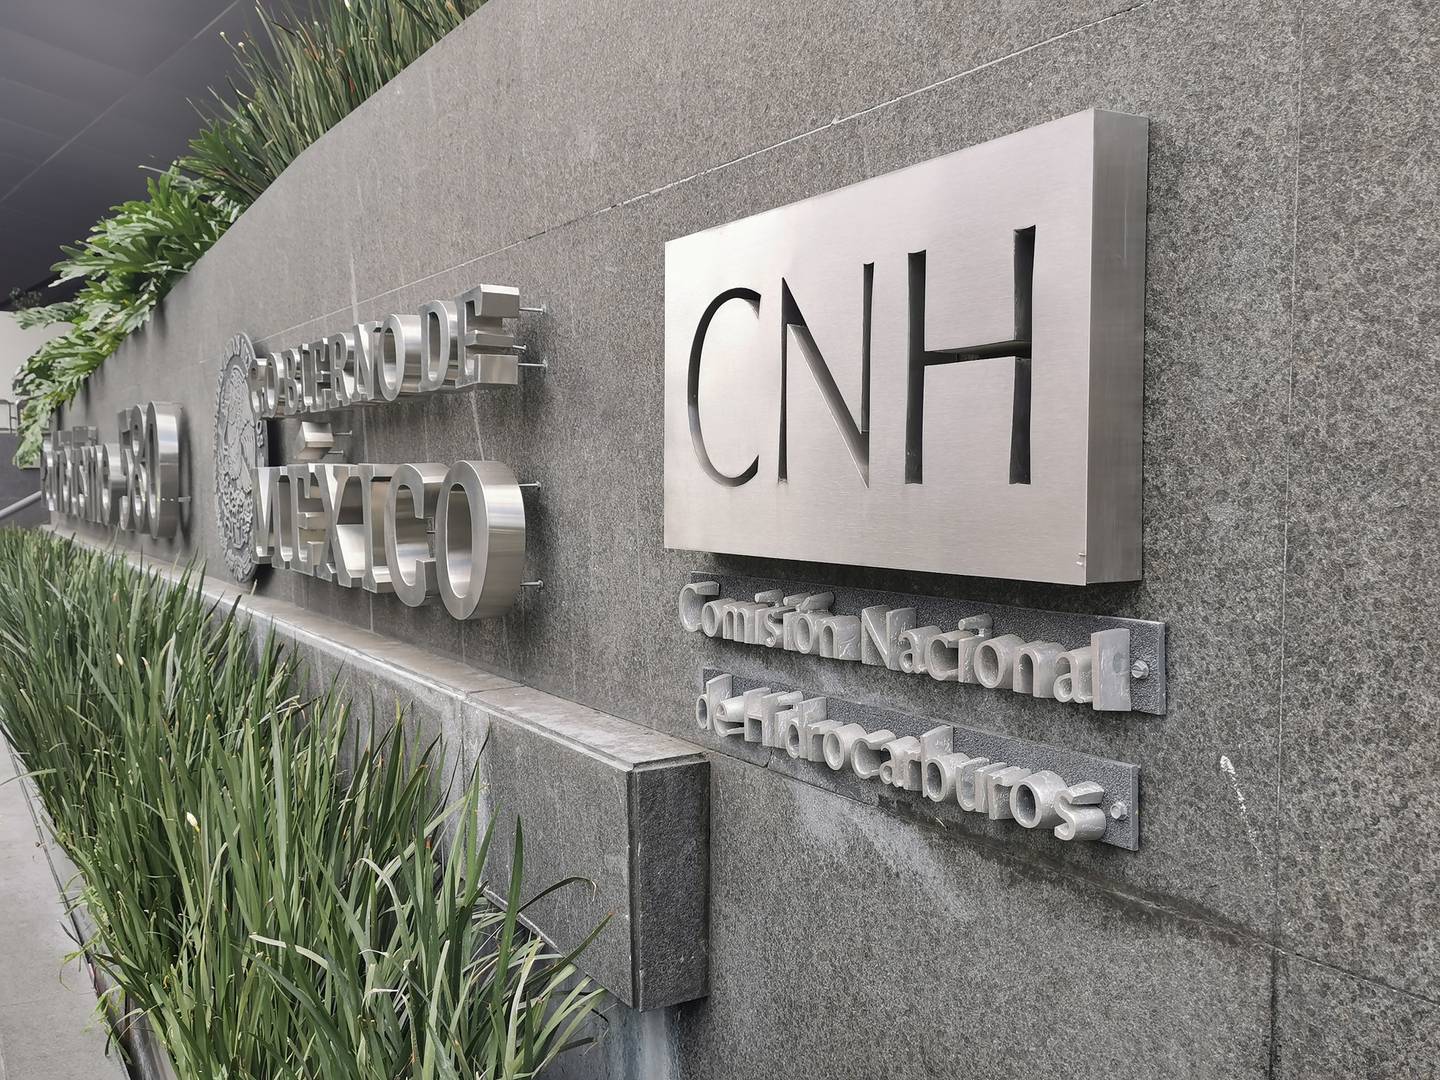 Logotipo de la Comisión Nacional de Hidrocarburos (CNH) afuera de su sede en la Ciudad de México (Foto: Arturo Solís).